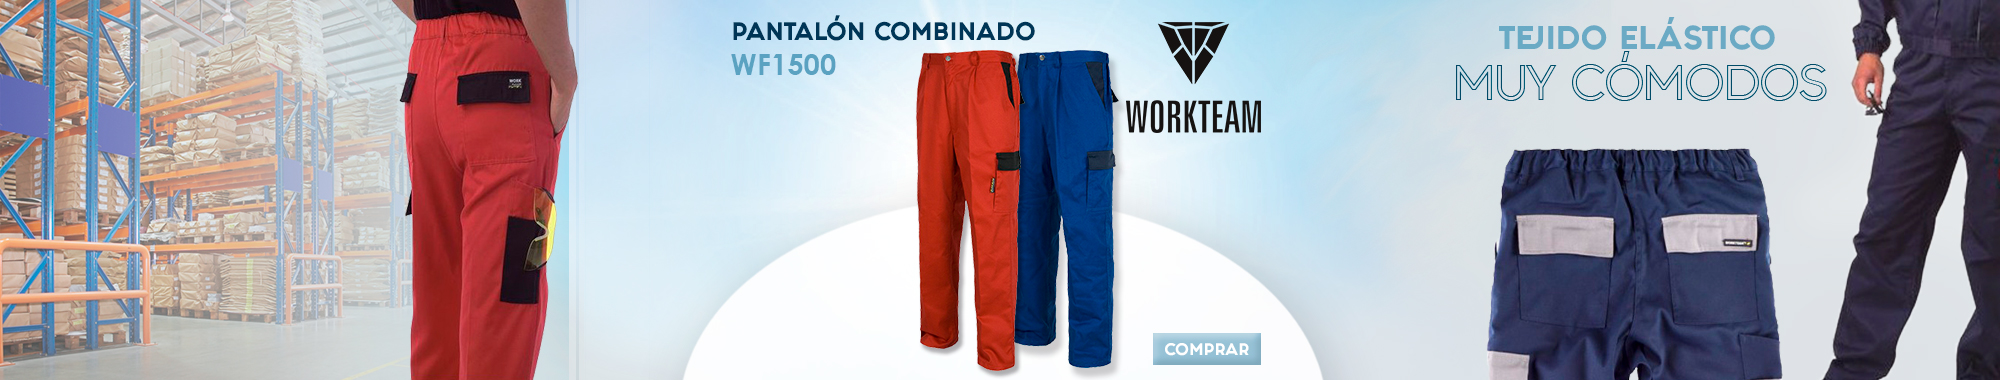 Pantalón combinado WORKTEAM WF1500